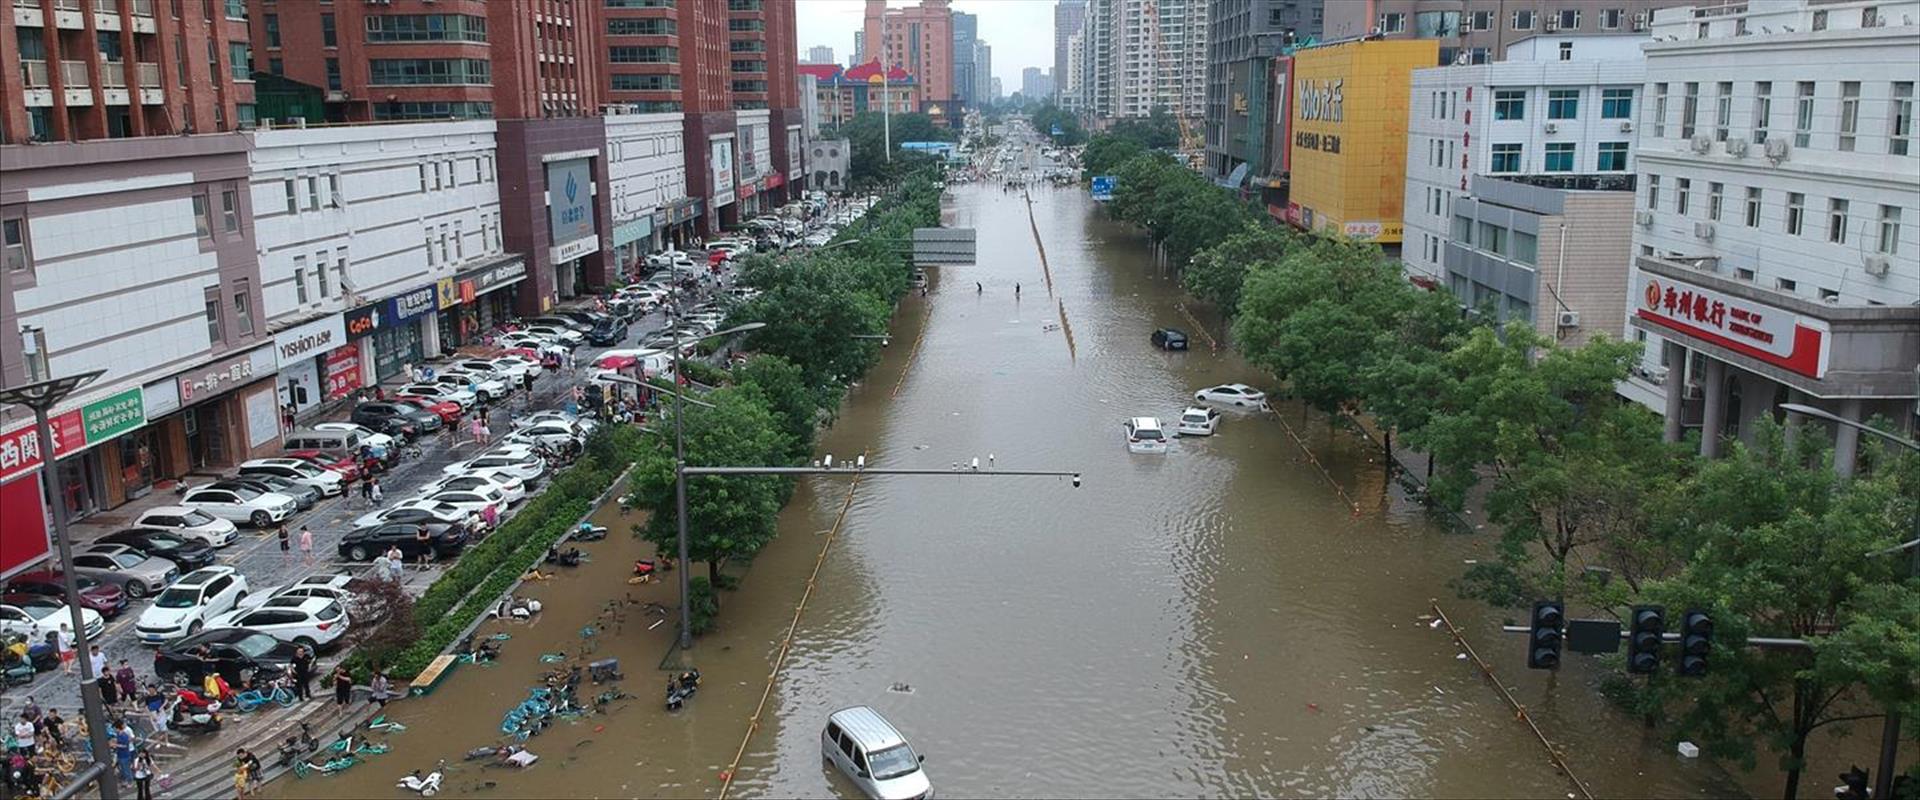 שיטפונות בעיר ז'נגז'ו בסין, היום